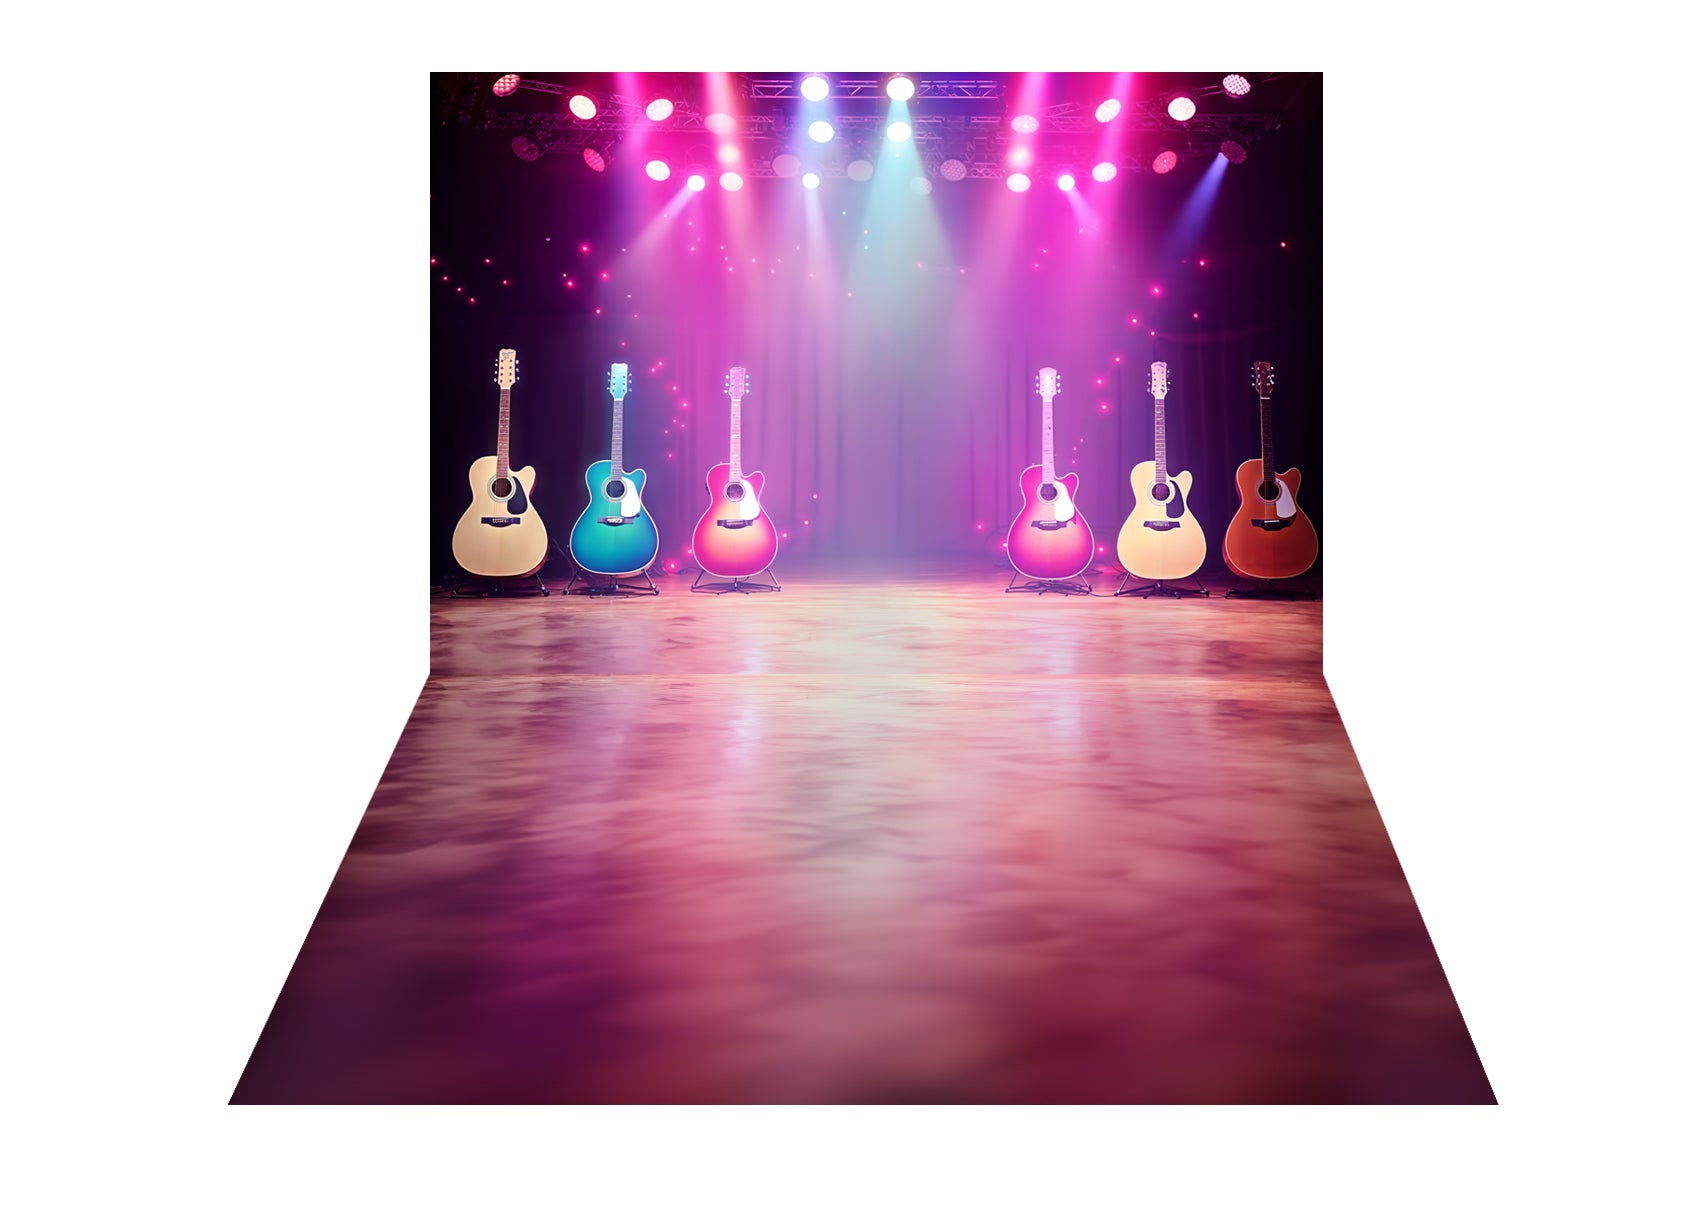 Sfondo del palco illuminato per chitarra e musica + sfondo del pavimento con texture sfumata bianco viola astratta